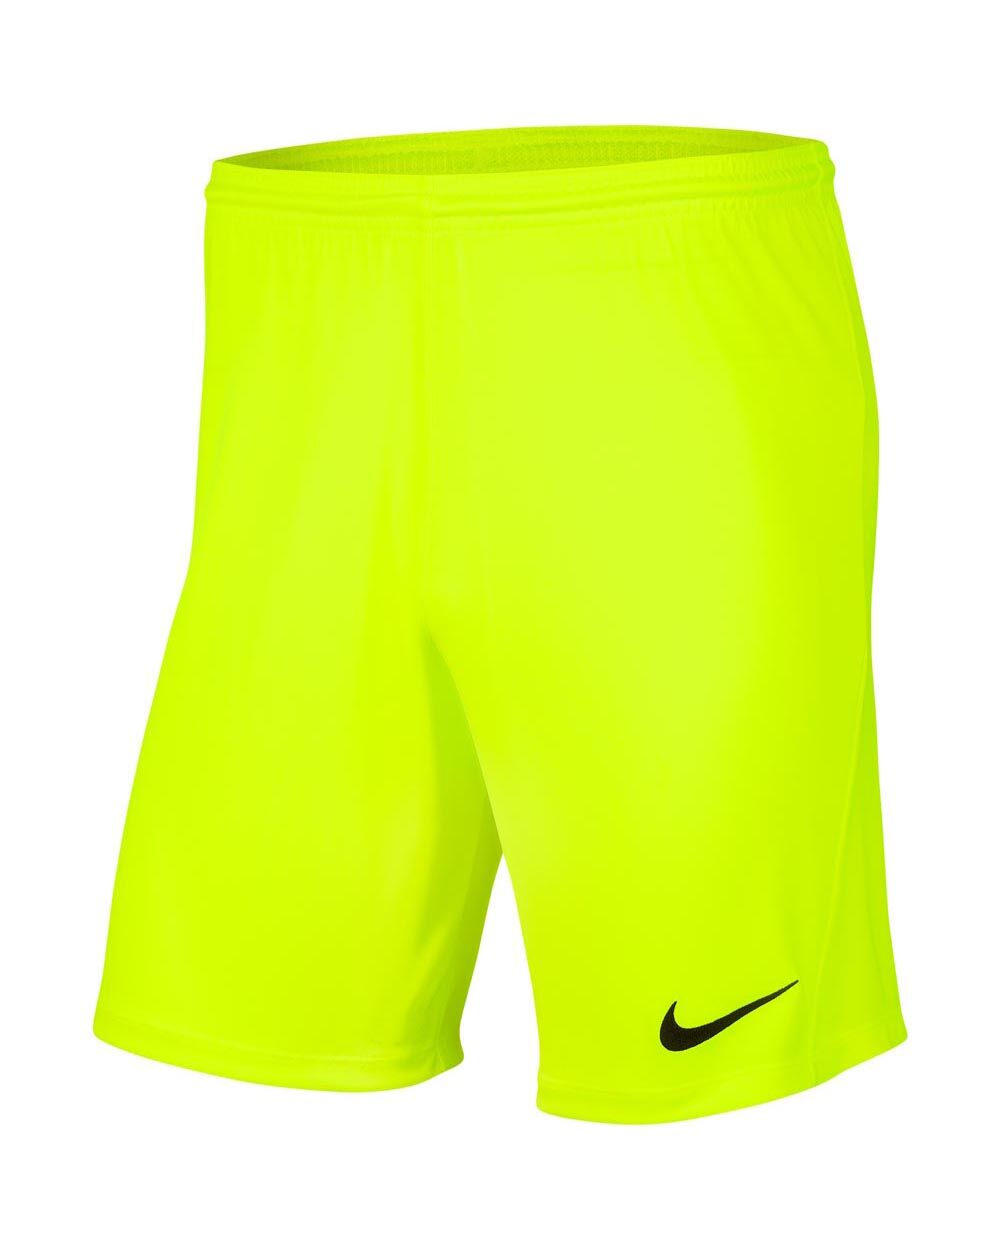 Nike Pantaloncini Park III Giallo Fluorescente Uomo BV6855-702 L